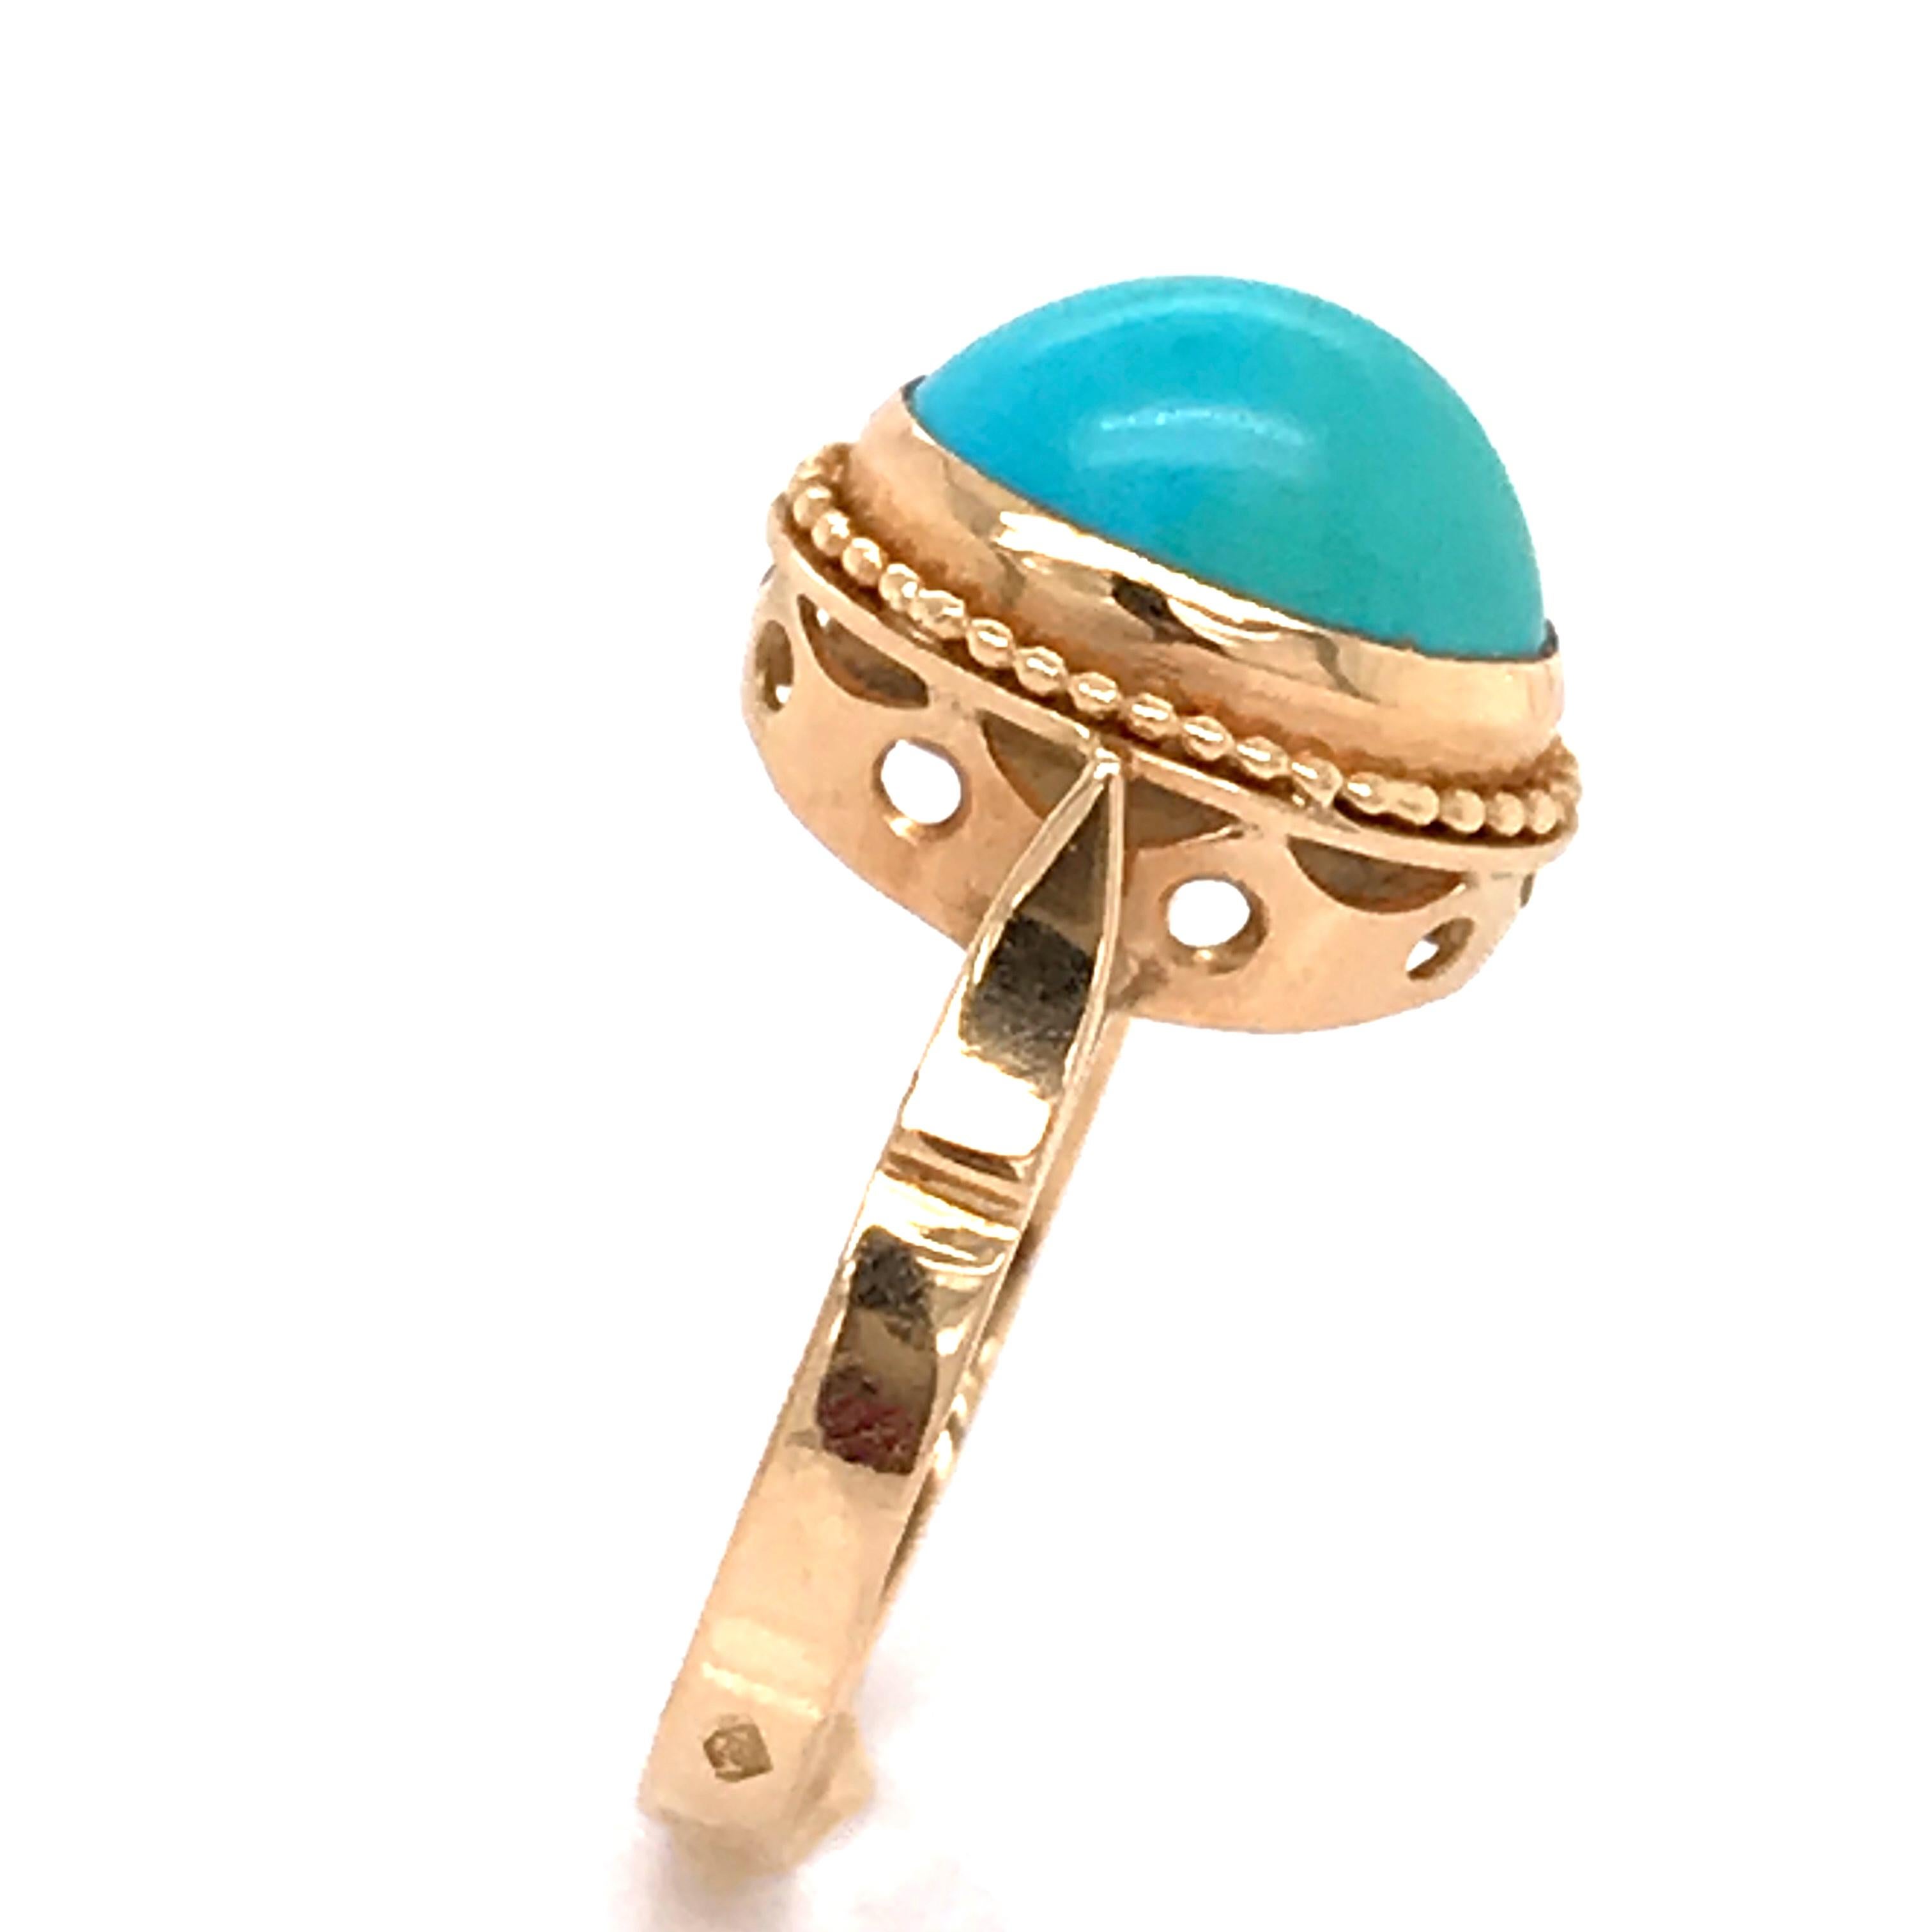 Turquoise Cabochon Shape on Rose Gold 18 Karat Fashion Ring 4